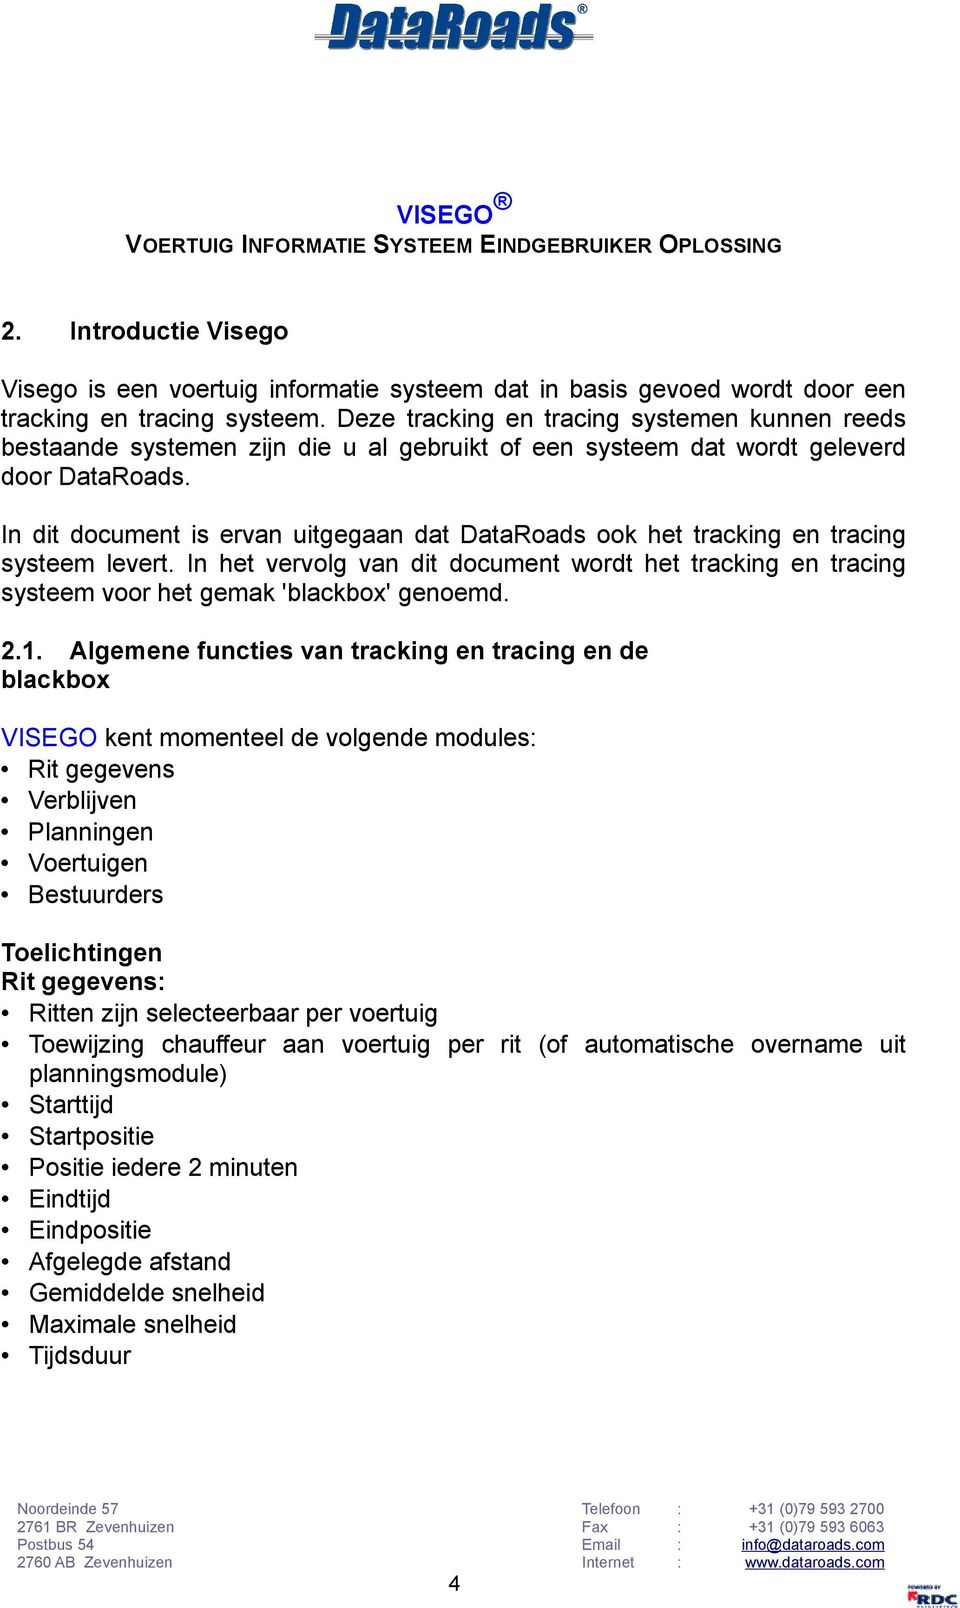 In dit document is ervan uitgegaan dat DataRoads ook het tracking en tracing systeem levert. In het vervolg van dit document wordt het tracking en tracing systeem voor het gemak 'blackbox' genoemd. 2.